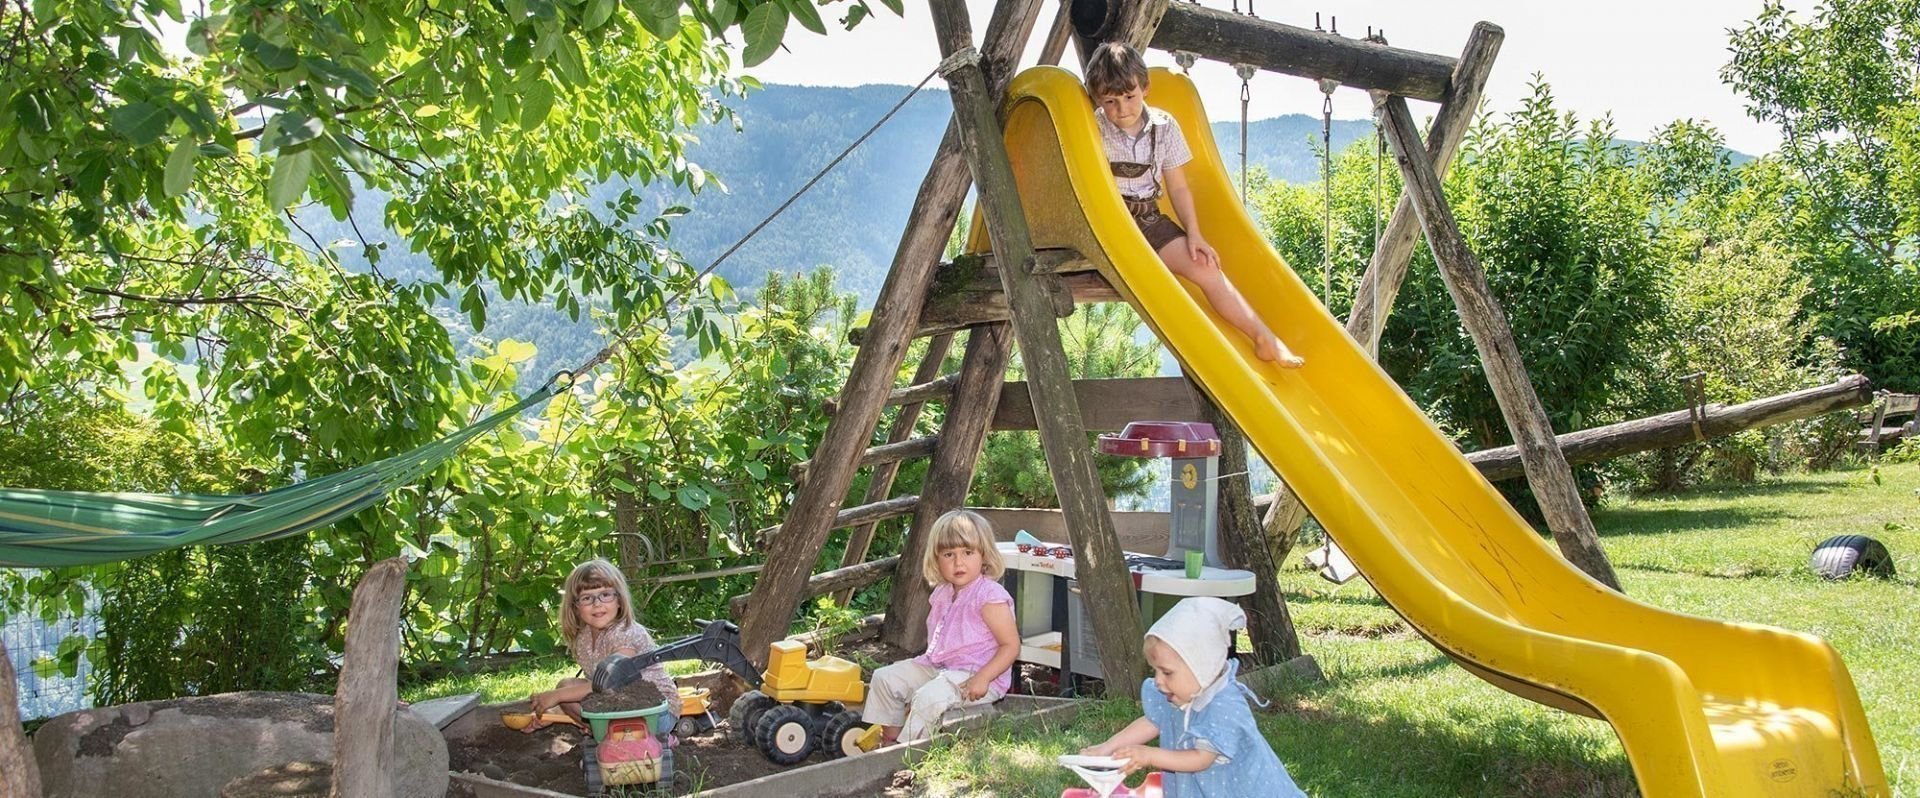 Vacanze in agriturismo con tutta la famiglia nelle Dolomiti